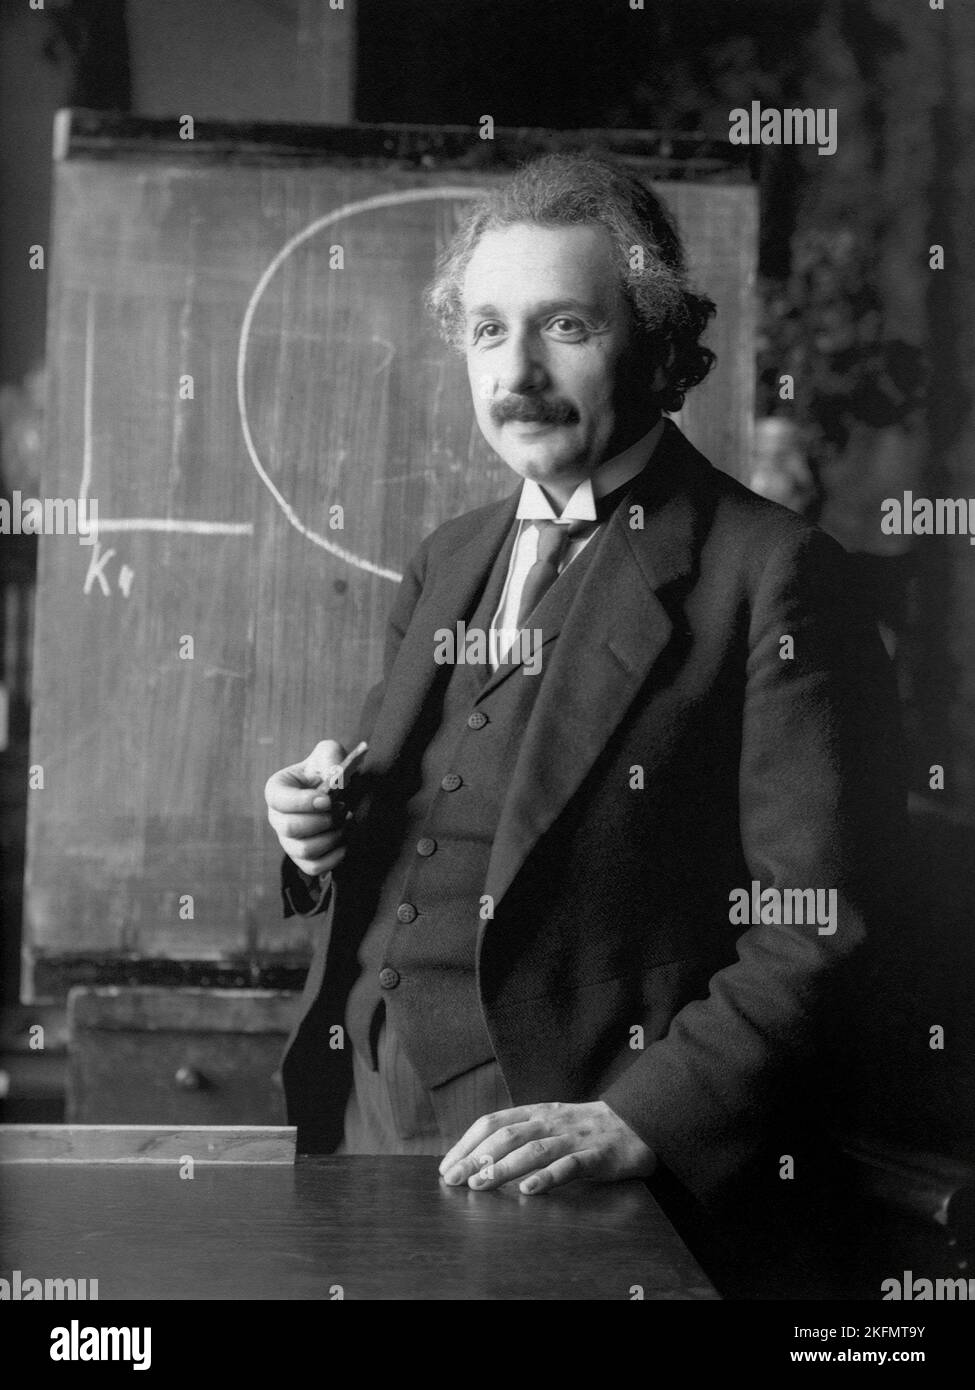 VIENNE, AUTRICHE - 1921 - Albert Einstein pendant une conférence à Vienne Autriche - photo: Geopix/F Schmutzer Banque D'Images